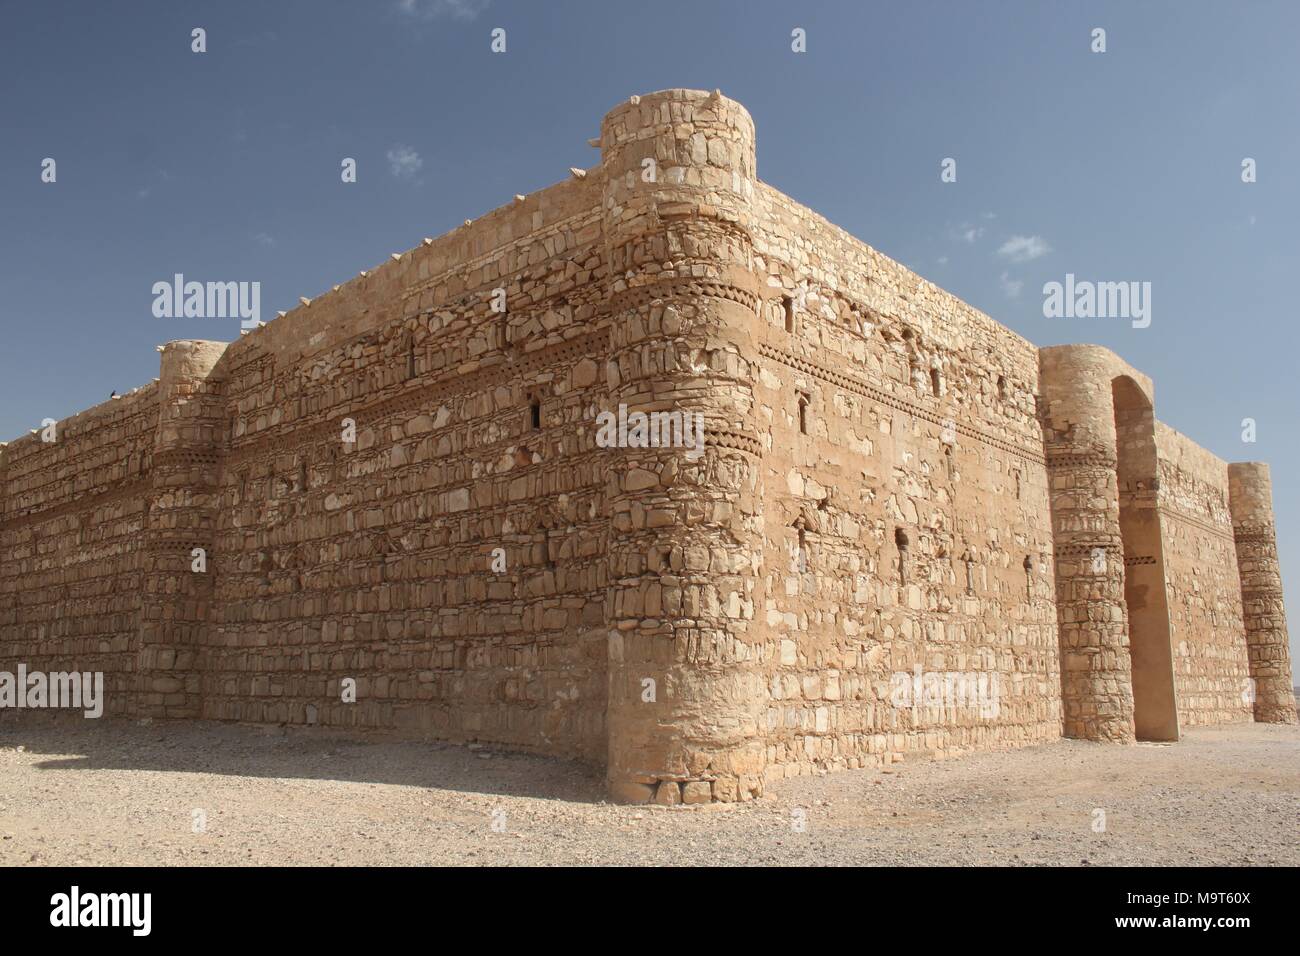 Qasr Kharana è uno dei castelli del deserto ad est di Amman. Risalente agli inizi del periodo Umayyad, è un esempio chiave di inizio dell'architettura islamica. Foto Stock